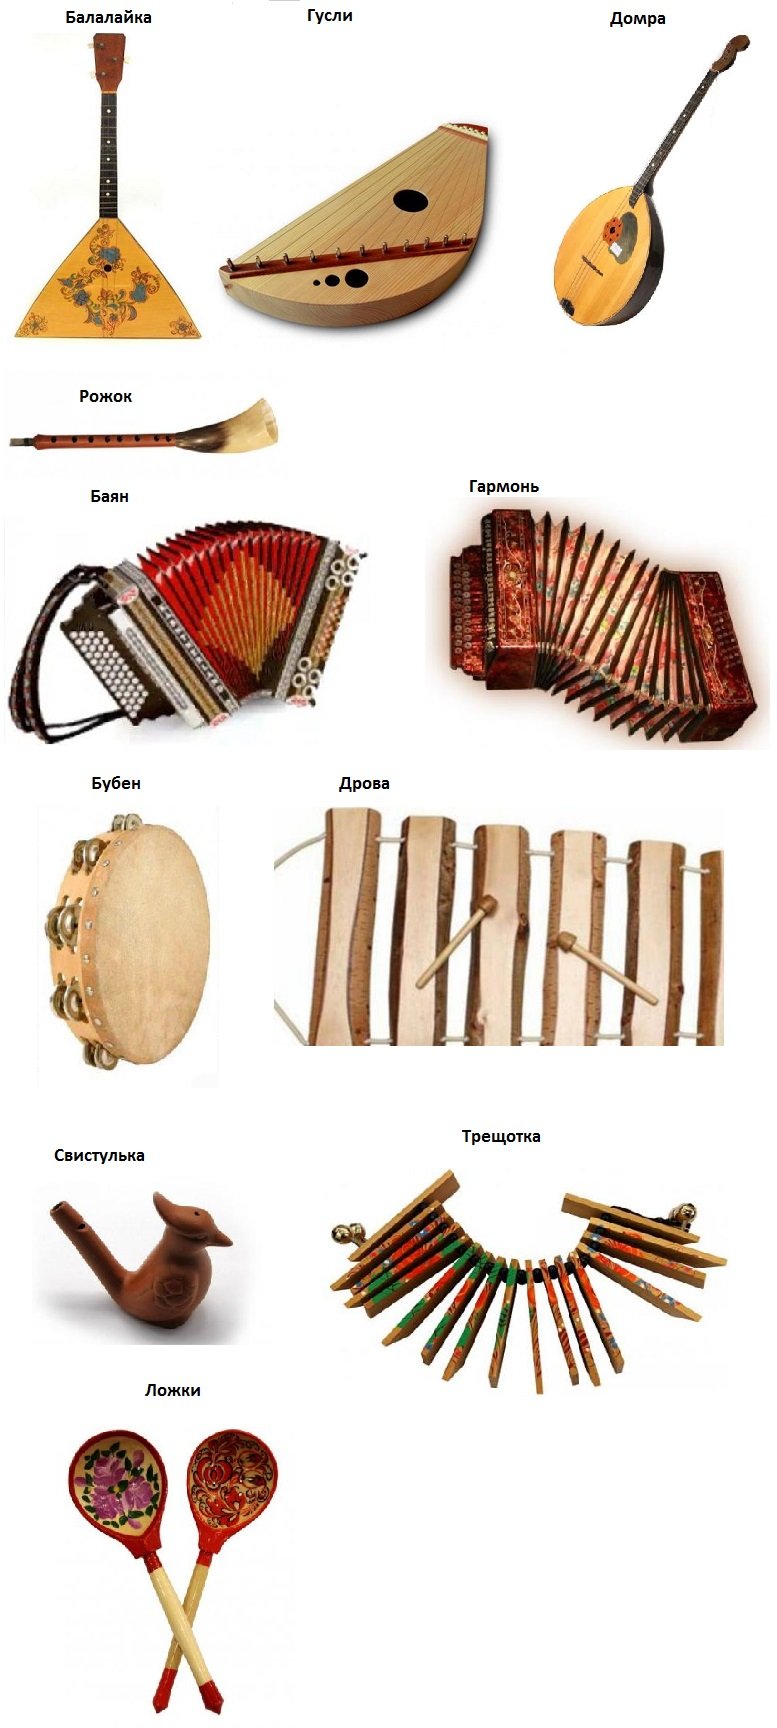 Шаркунки - русские народные музыкальные инструменты